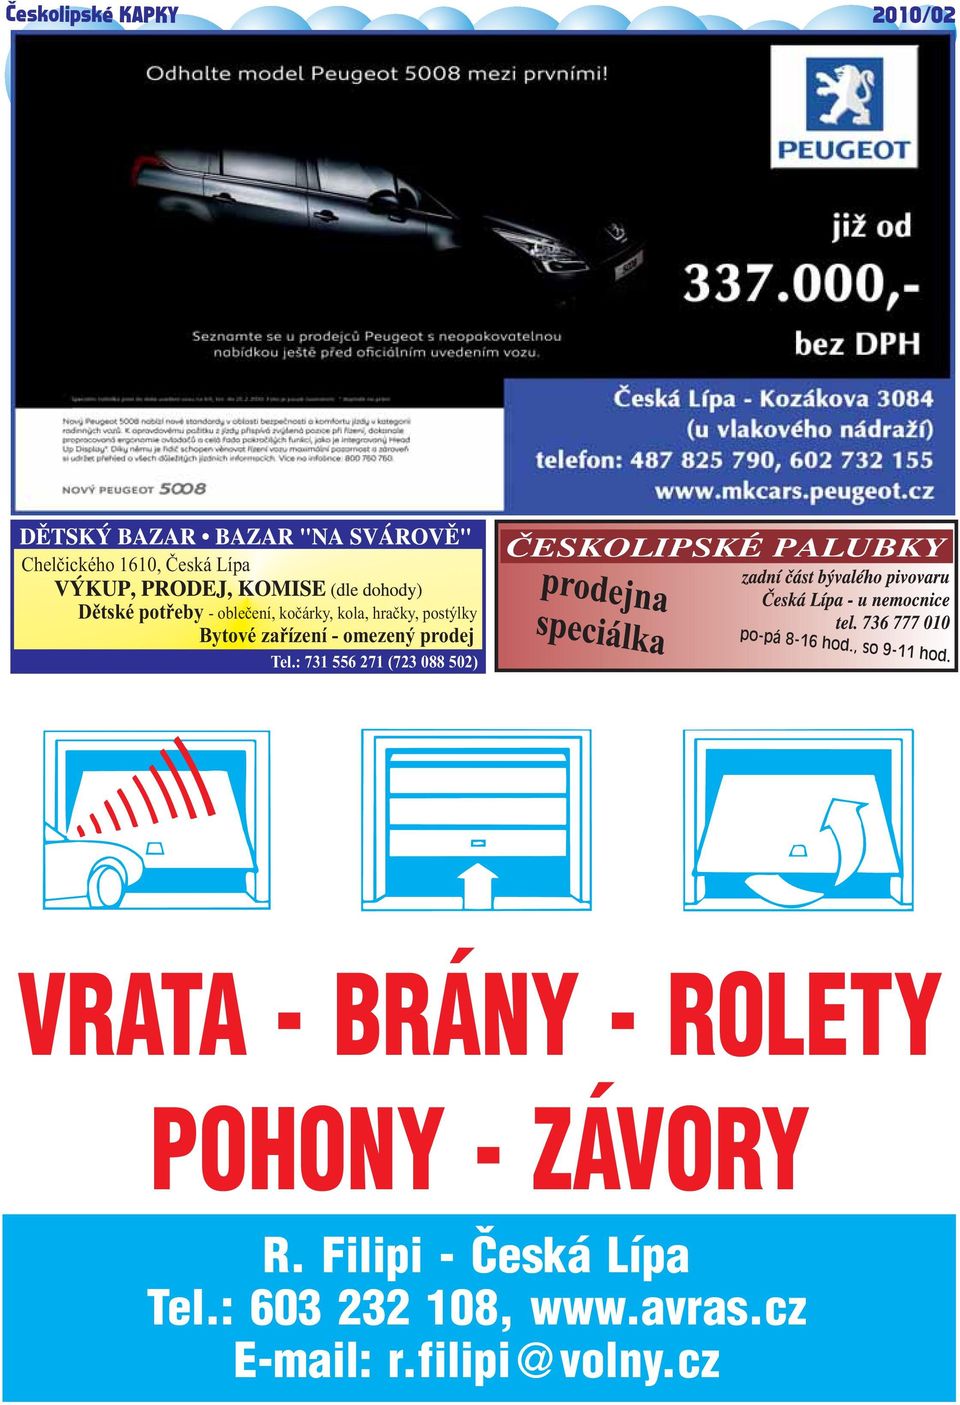 : 731 556 271 (723 088 502) VRATA - BRÁNY - ROLETY POHONY - ZÁVORY